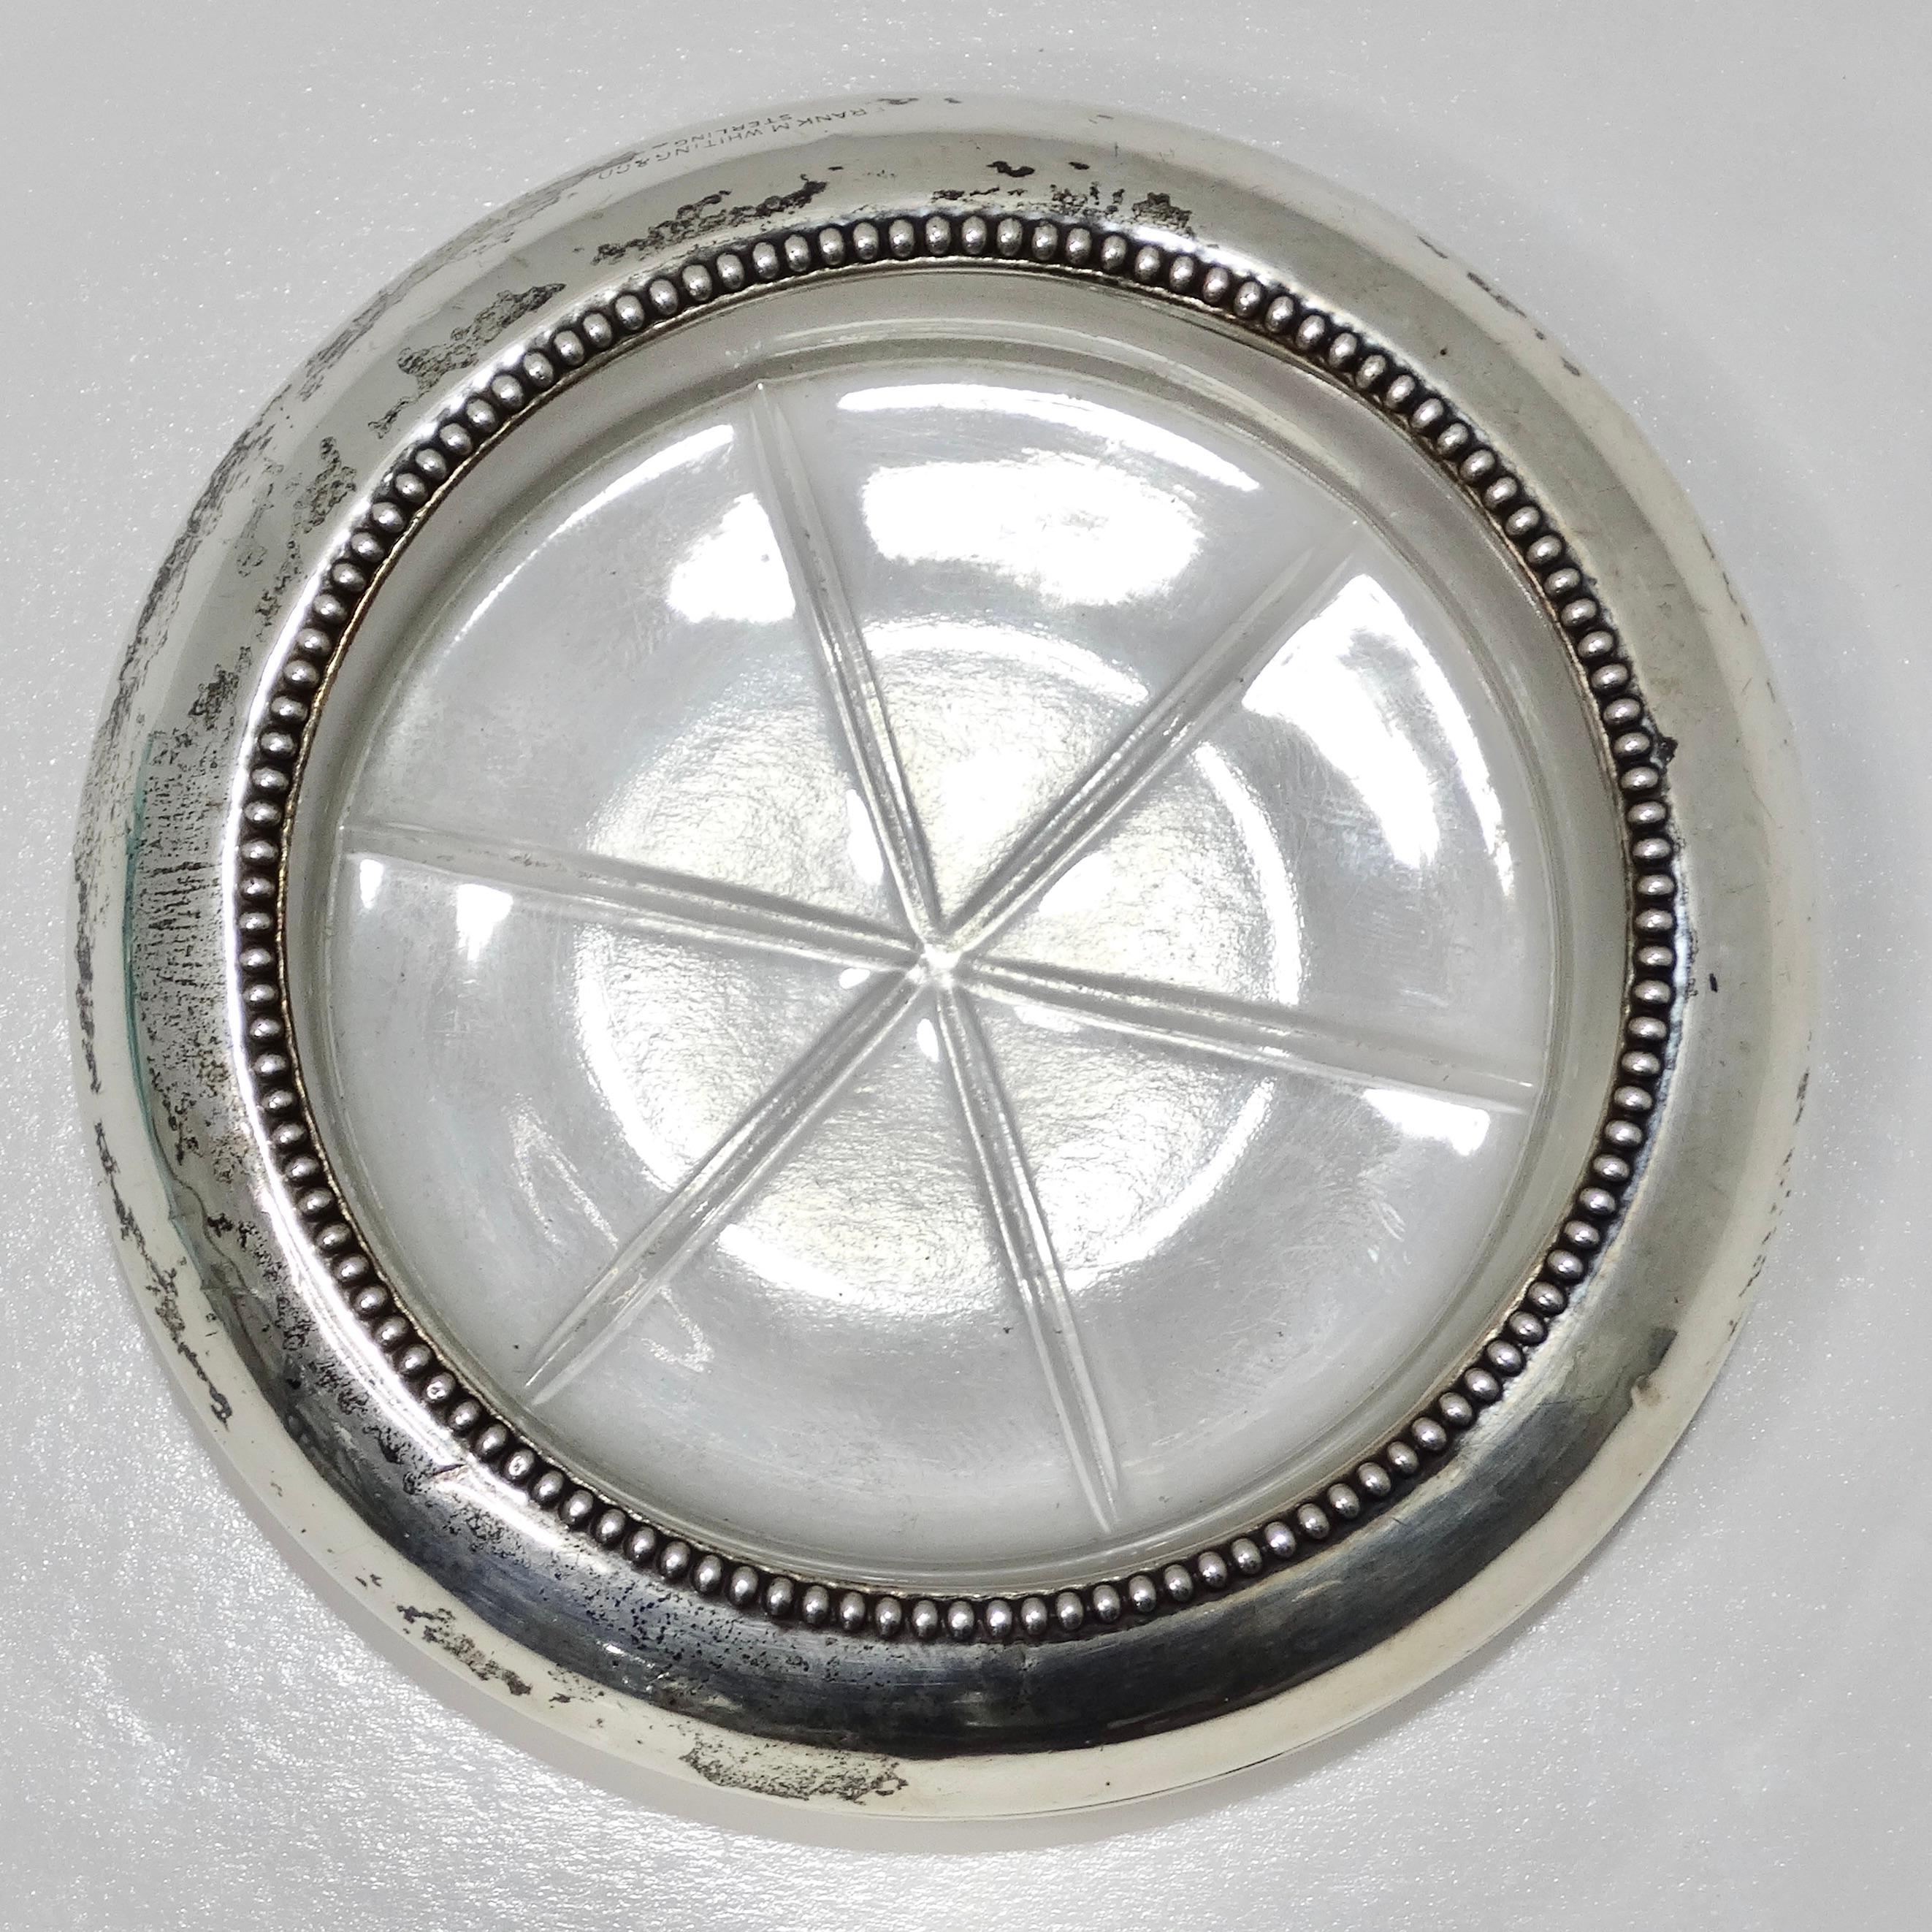 Wir präsentieren das Frank M. Whiting & Co Antique Pure Silver Glass Ash Tray, ein wunderschönes Stück Vintage-Dekor aus den frühen 1900er Jahren.

Dieser mit viel Liebe zum Detail gefertigte Aschenbecher besteht aus einer runden Glasschale, die mit